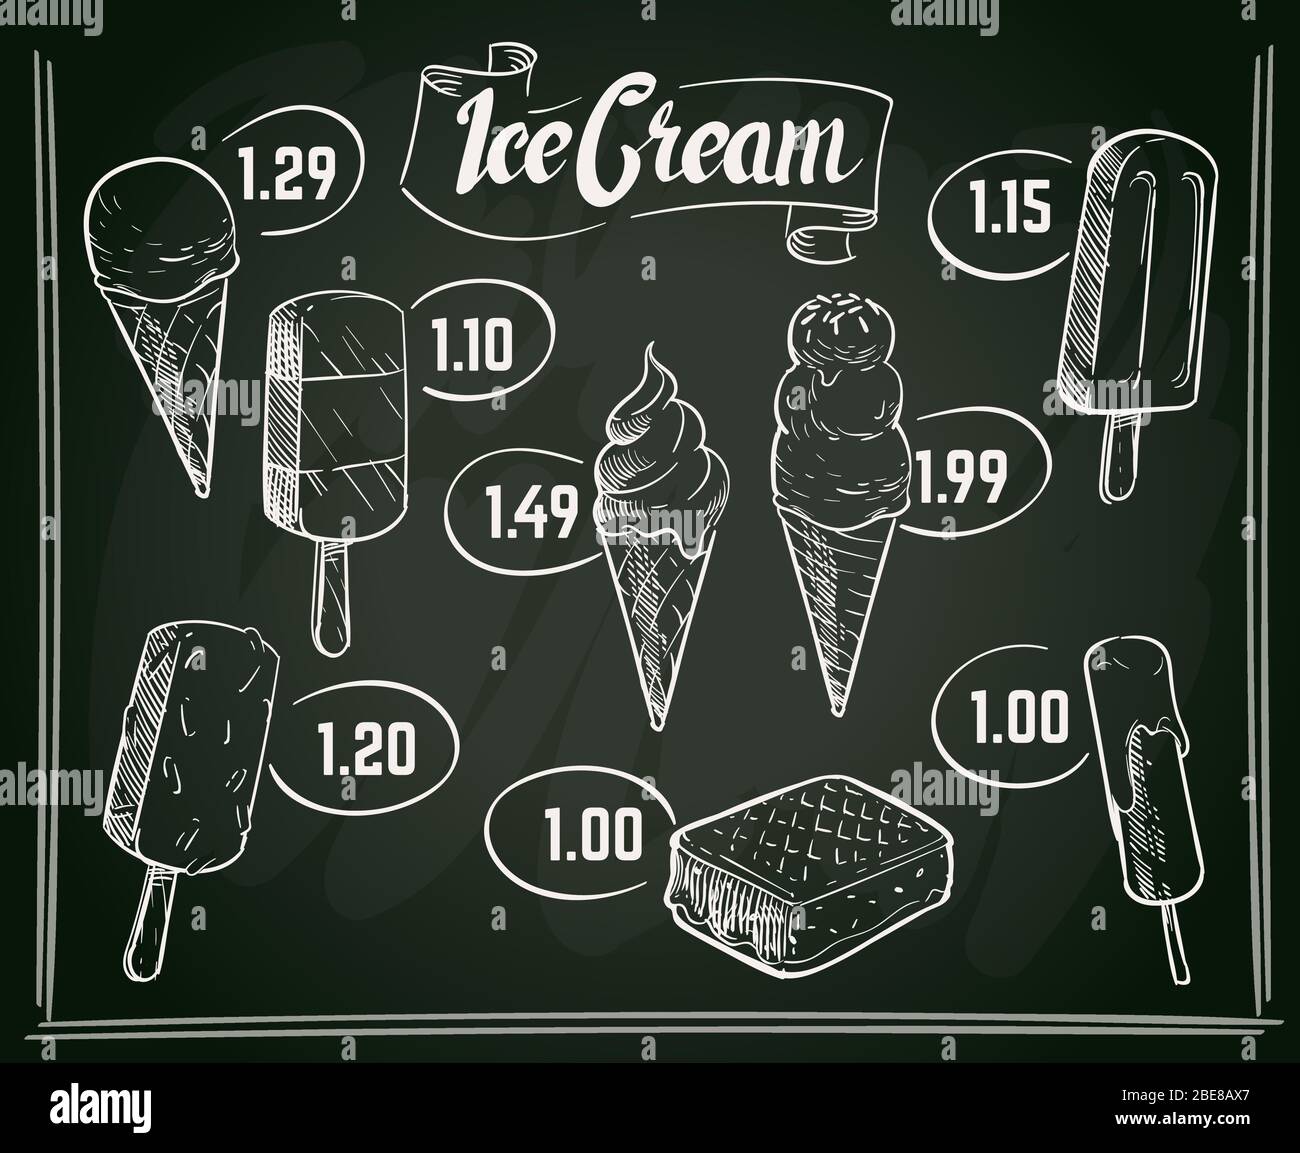 Disegno vettoriale del menu gelato disegnato a mano sulla lavagna. Menu con  gelato su disegno di lavagna, illustrazione vettoriale Immagine e Vettoriale  - Alamy